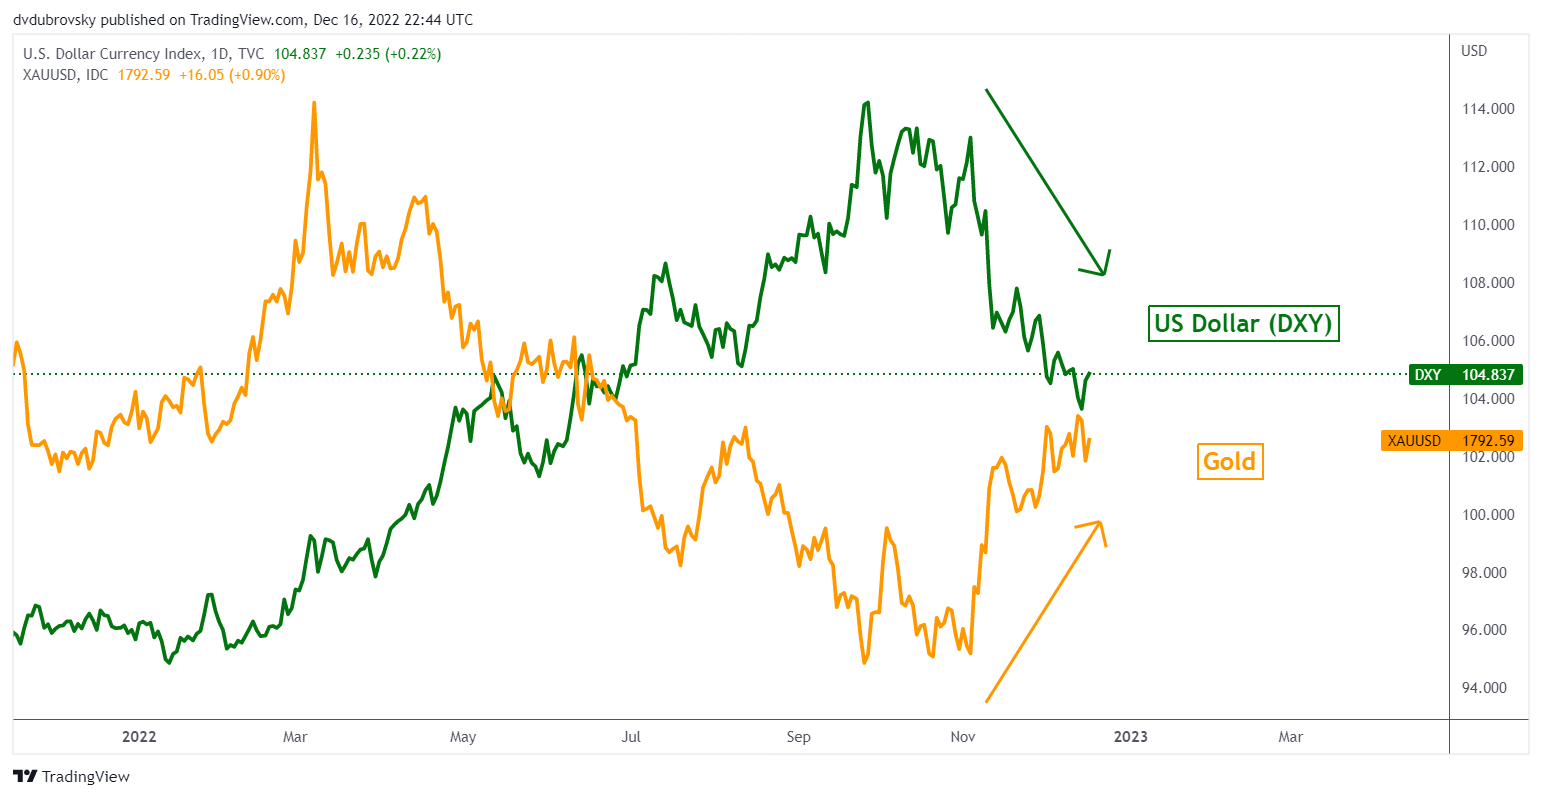 Gold Versus the US Dollar